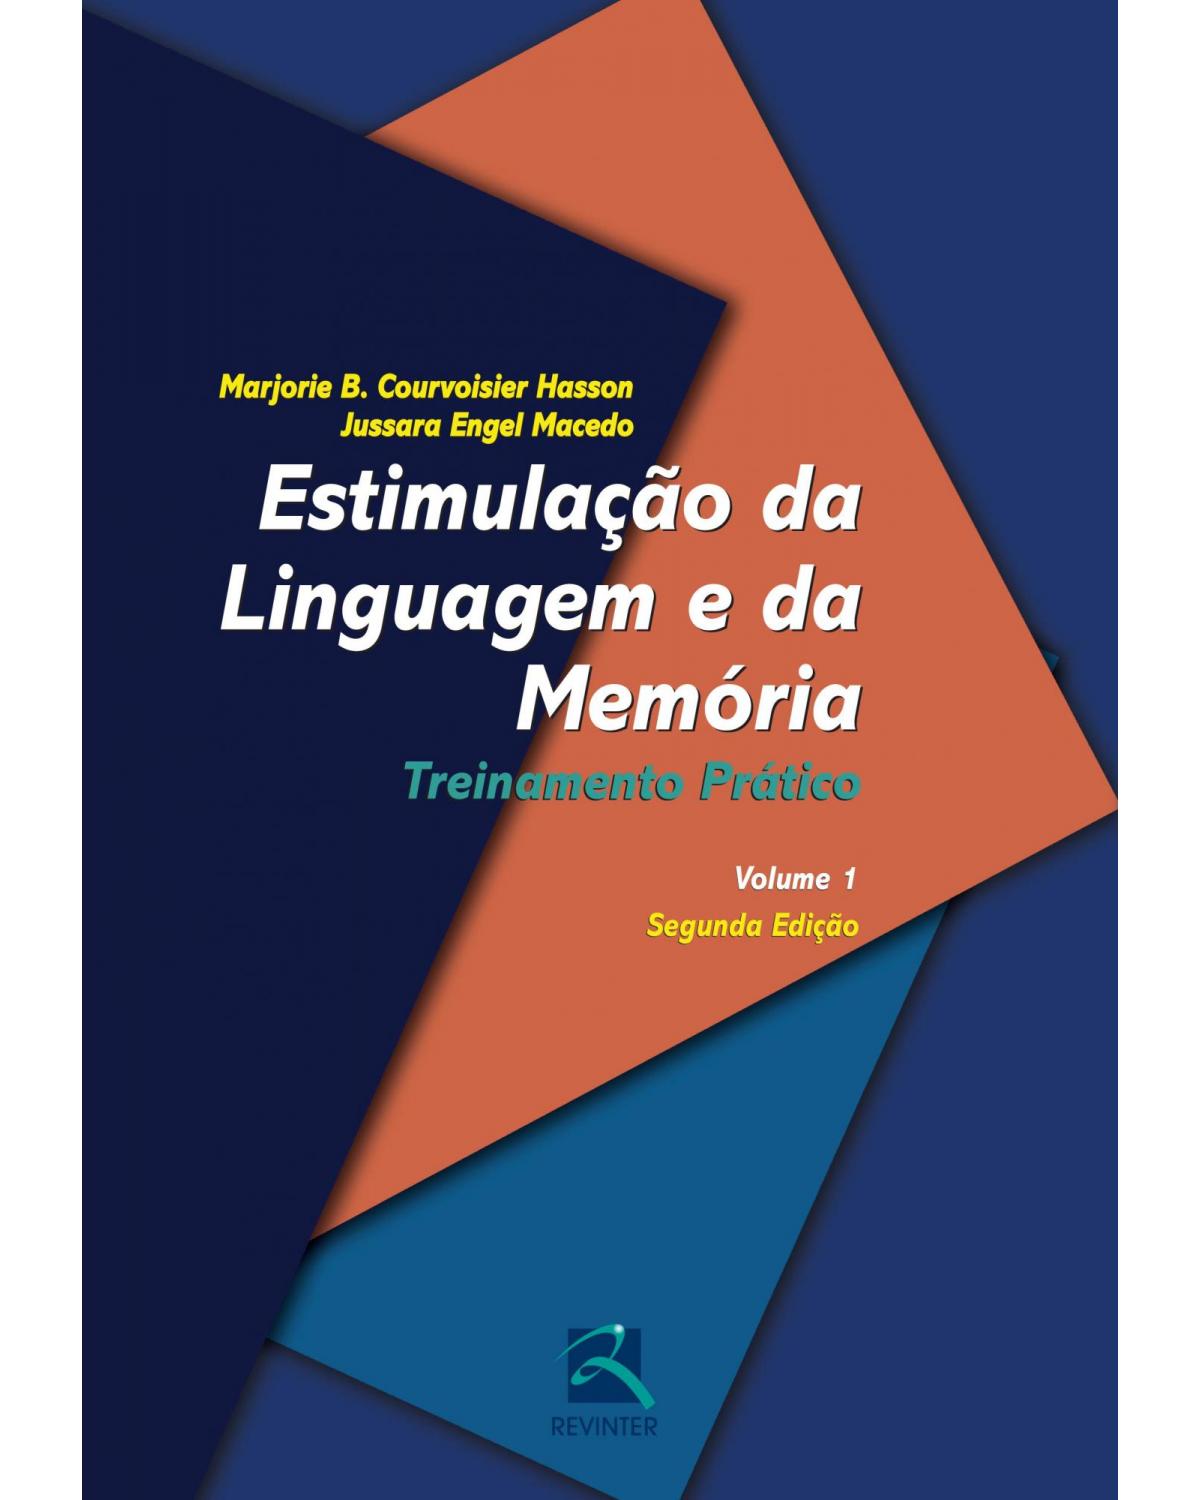 Estimulação da linguagem e da memória - Volume 1: treinamento prático - 2ª Edição | 2015